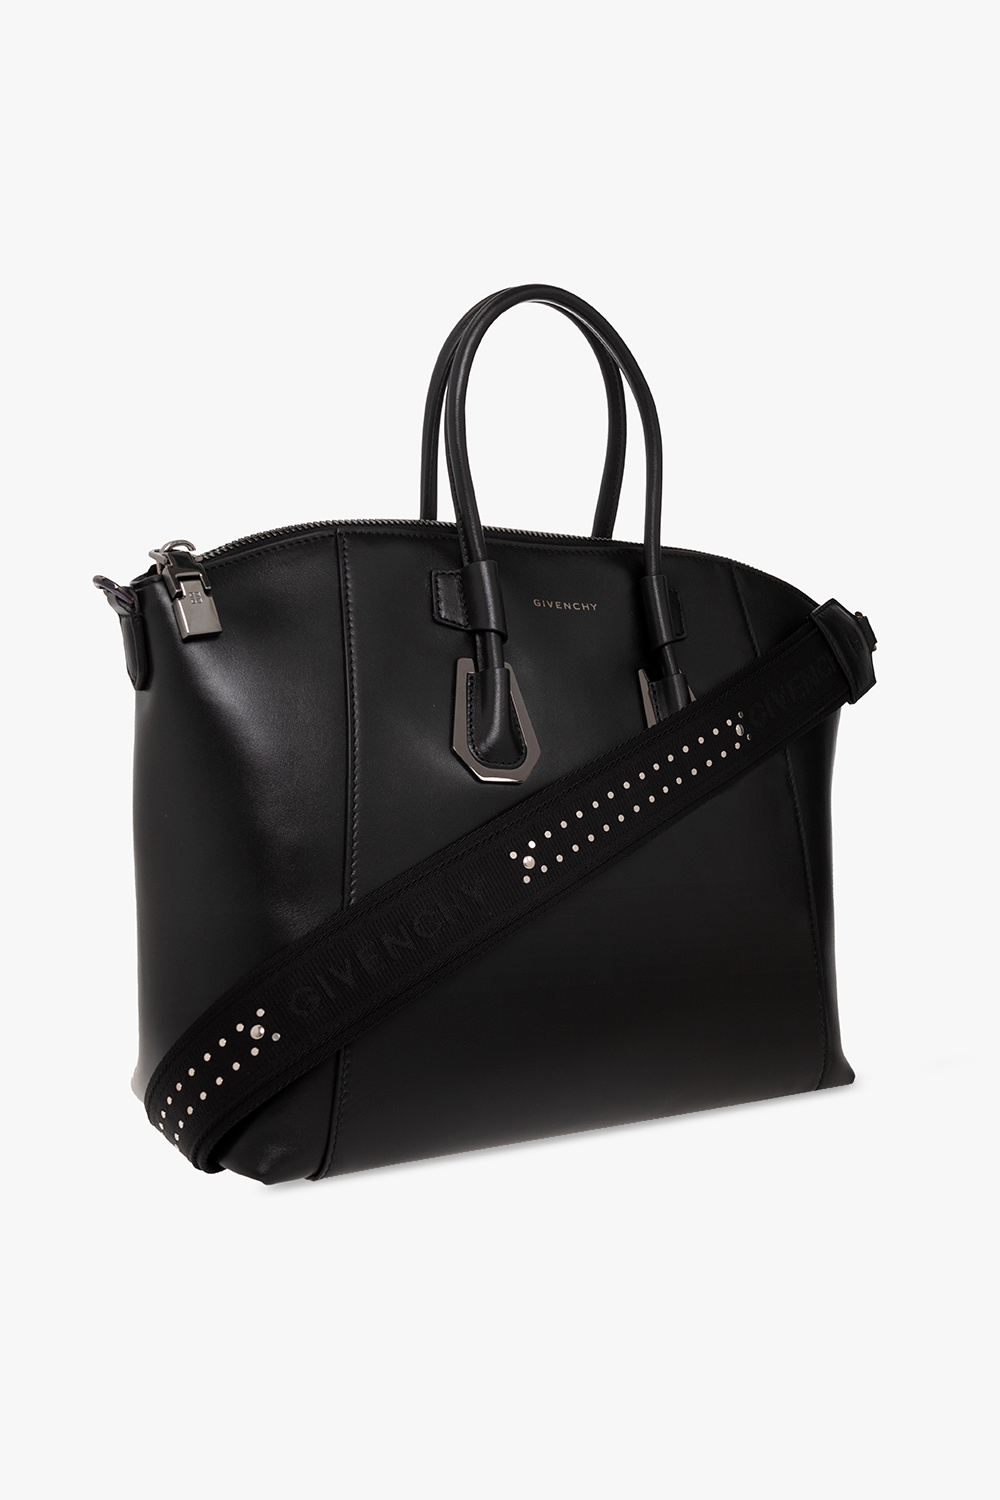 Givenchy ‘Antigona Sport Small’ shoulder bag